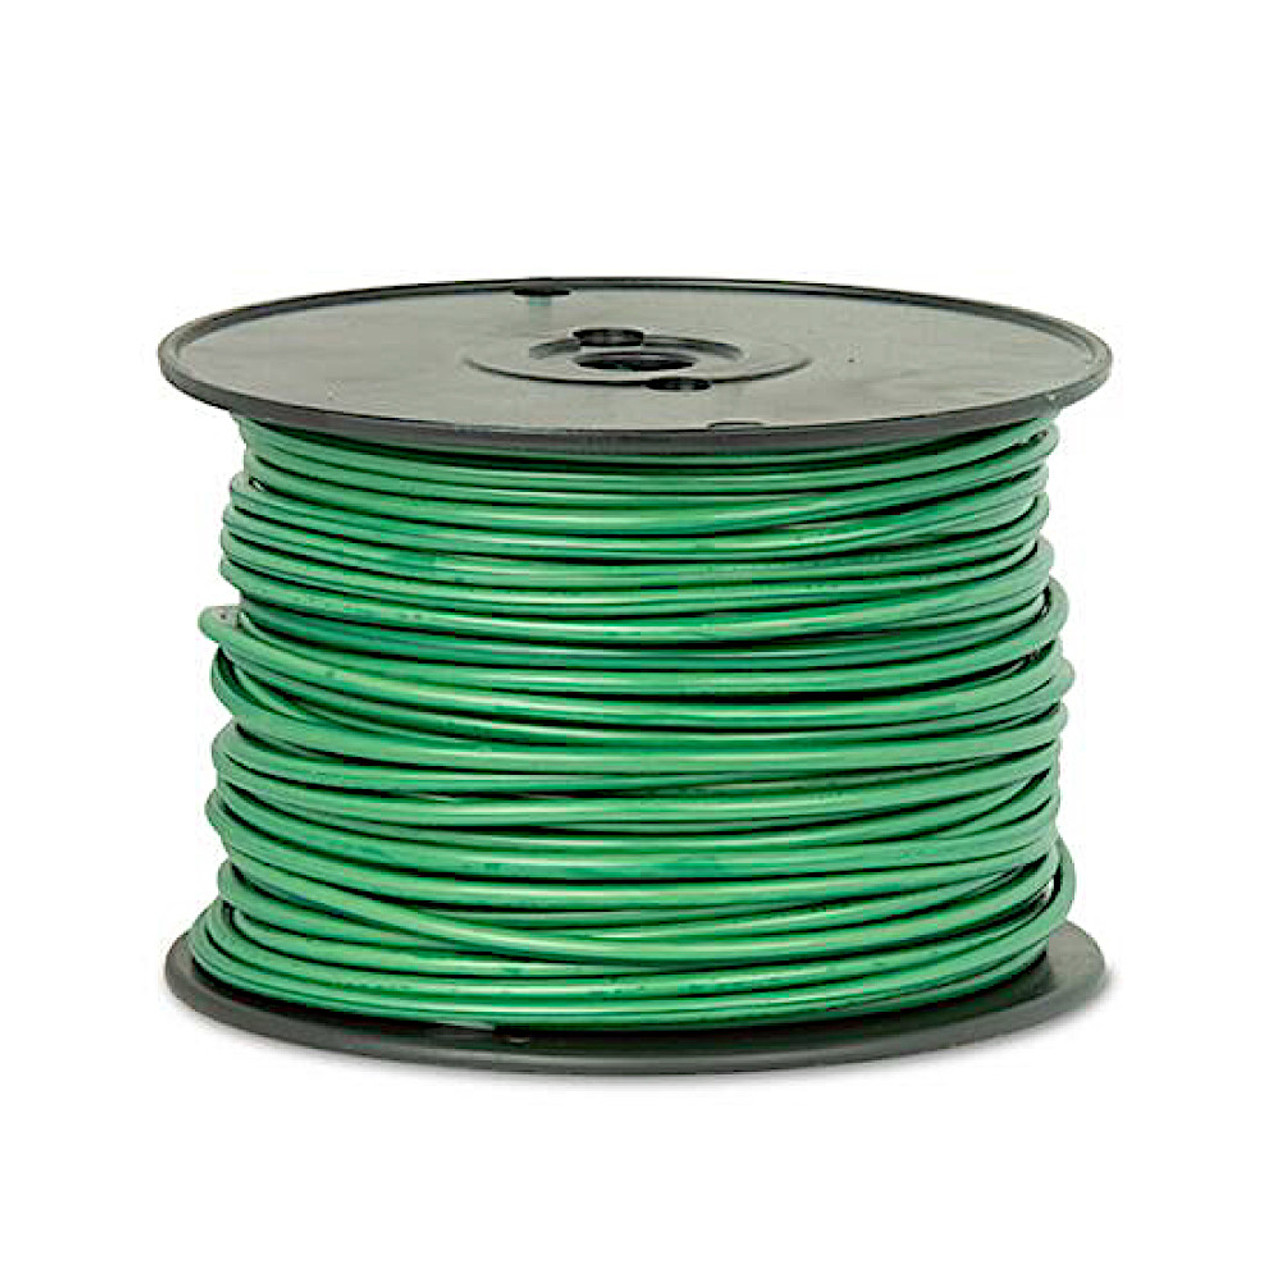 12 Gauge Wire - Green